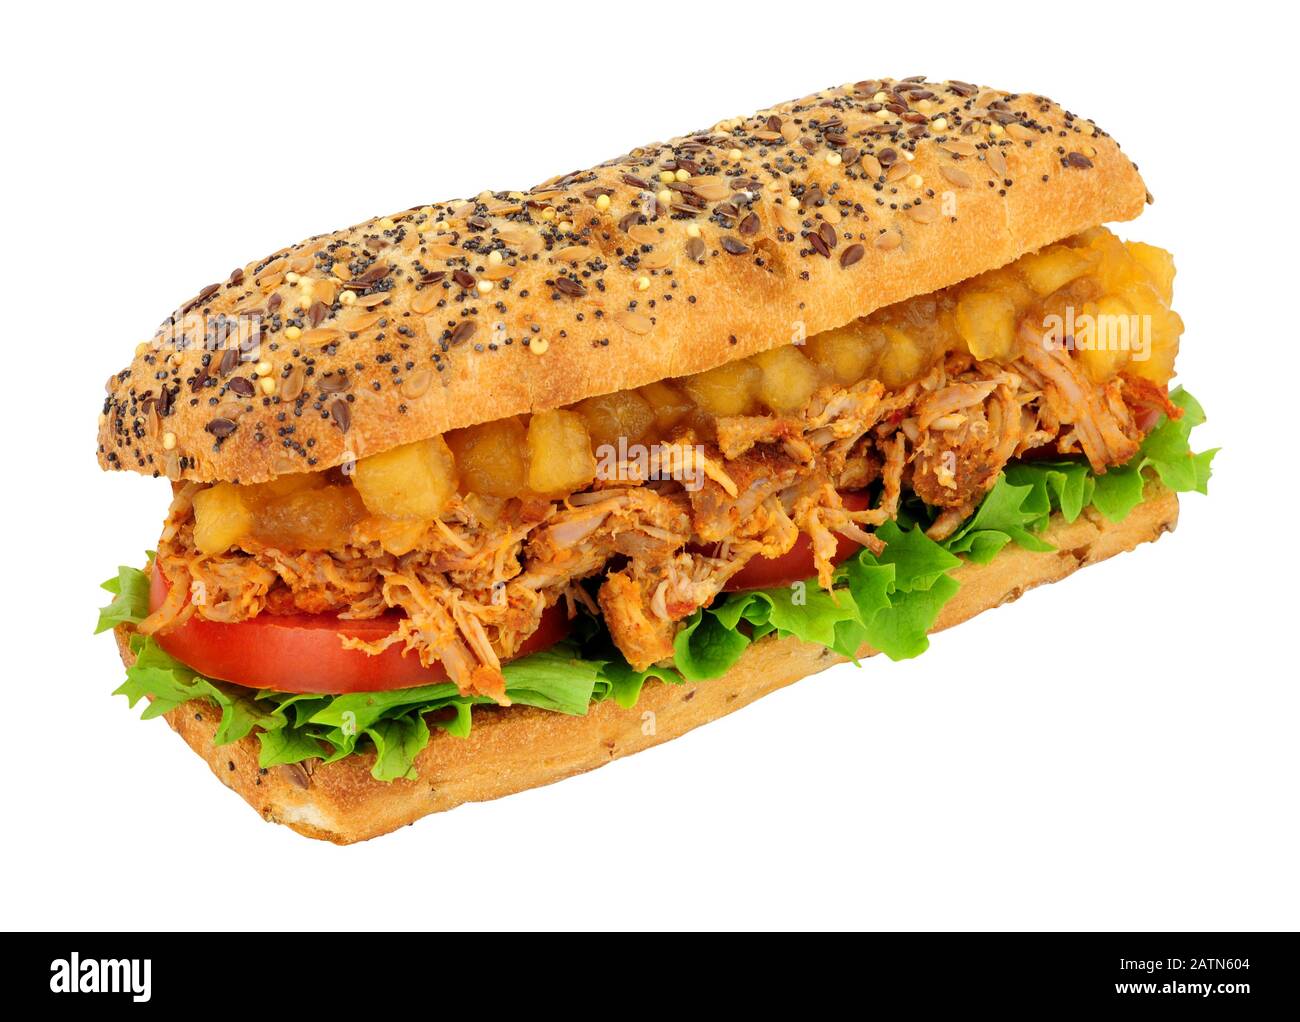 Sandwich au porc haché cuit lentement dans un pain à plateau multigrains  avec sauce grosse pomme Bramley isolée sur fond blanc Photo Stock - Alamy